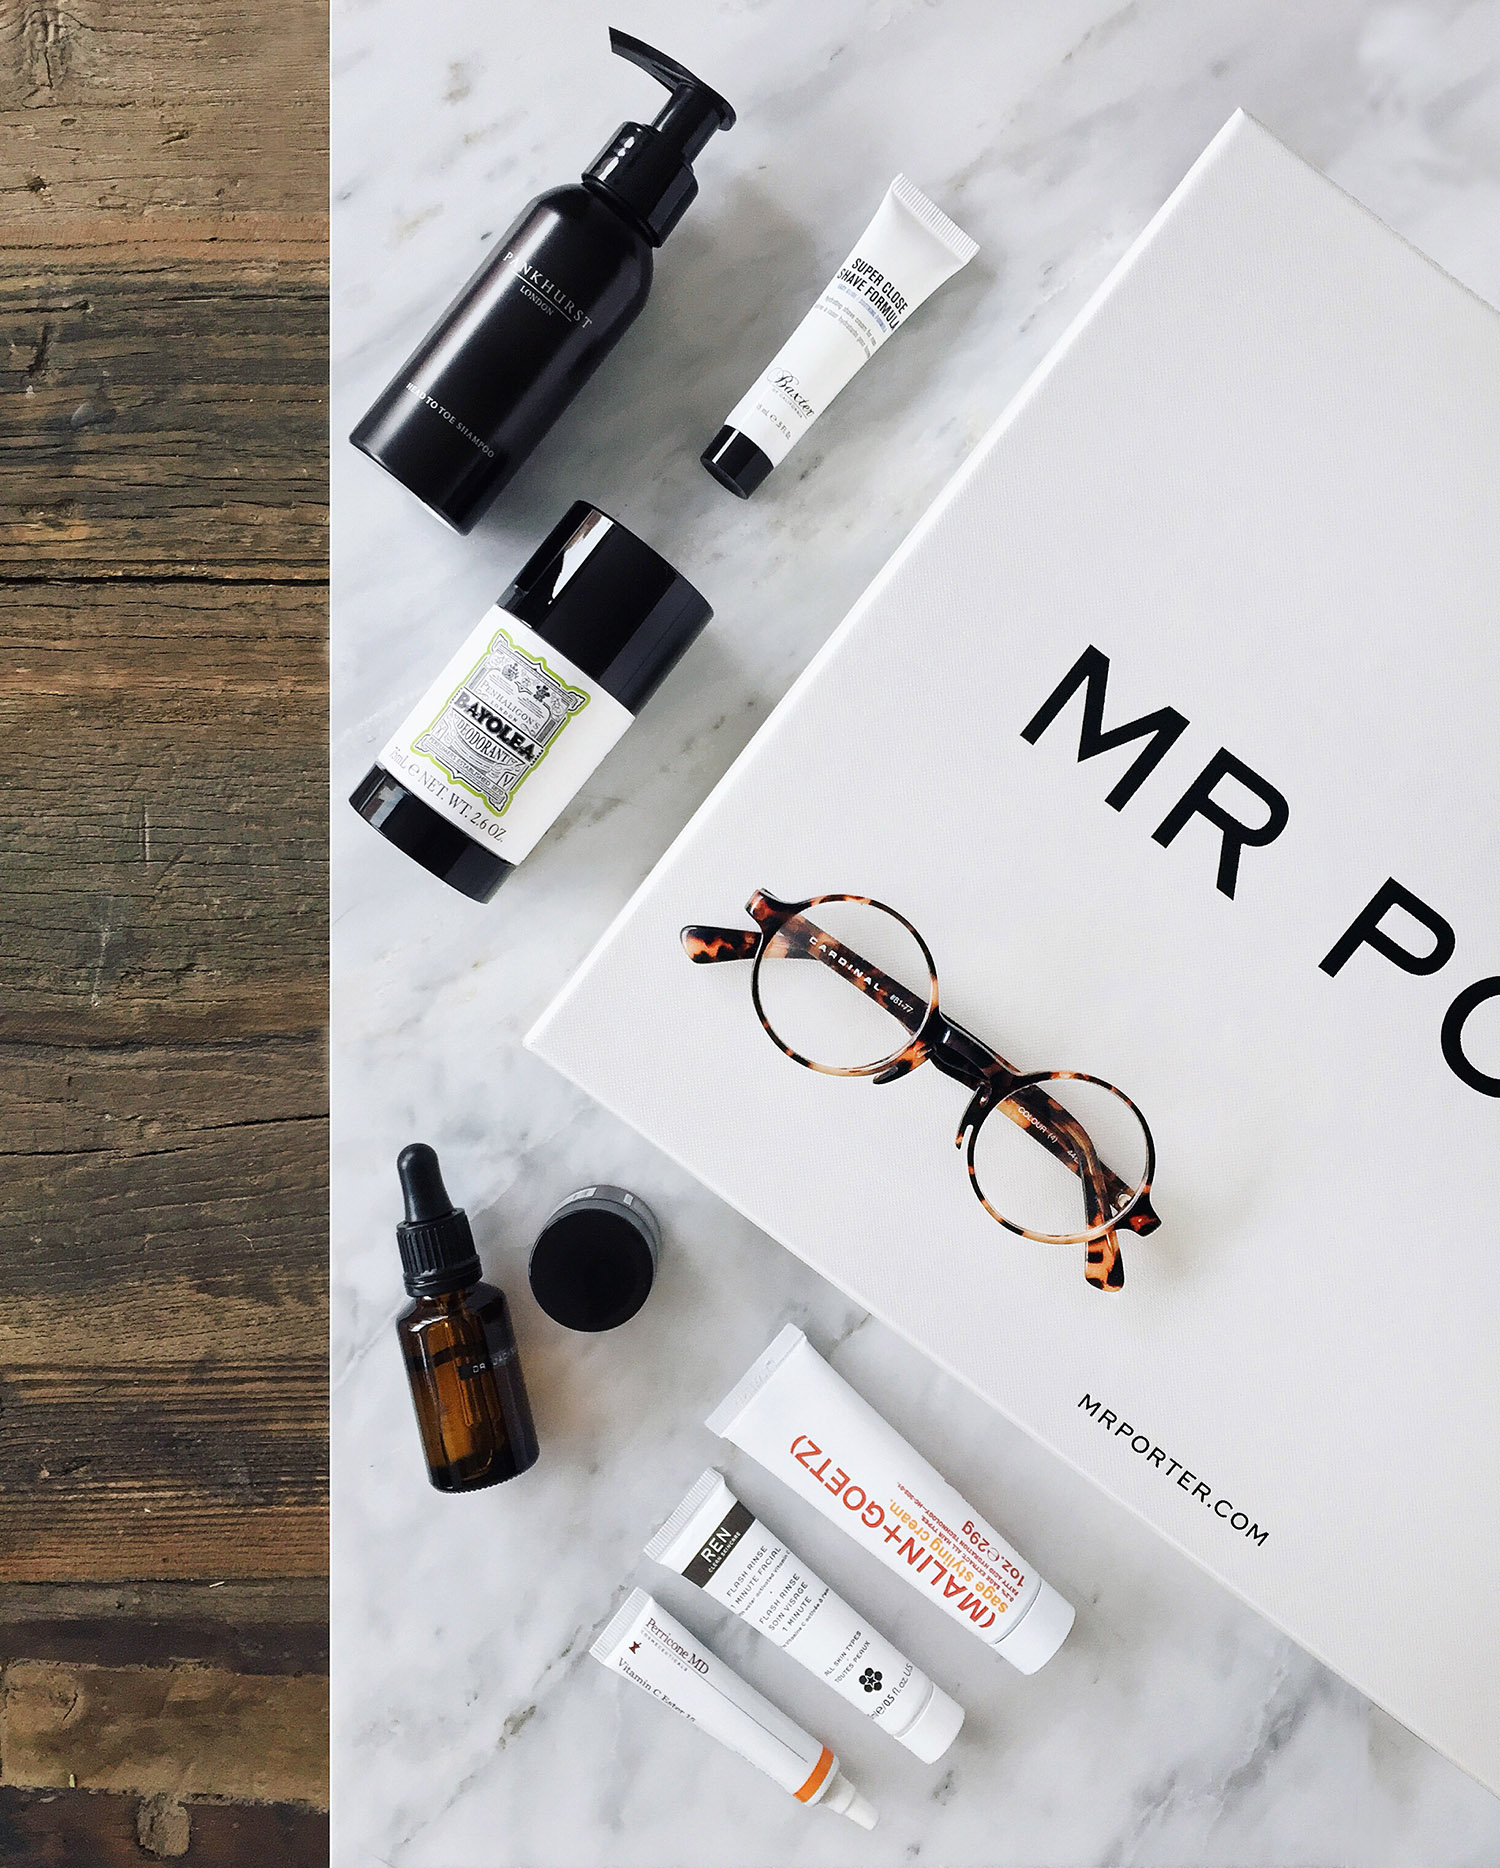 Mr Porter’s Grooming Kit